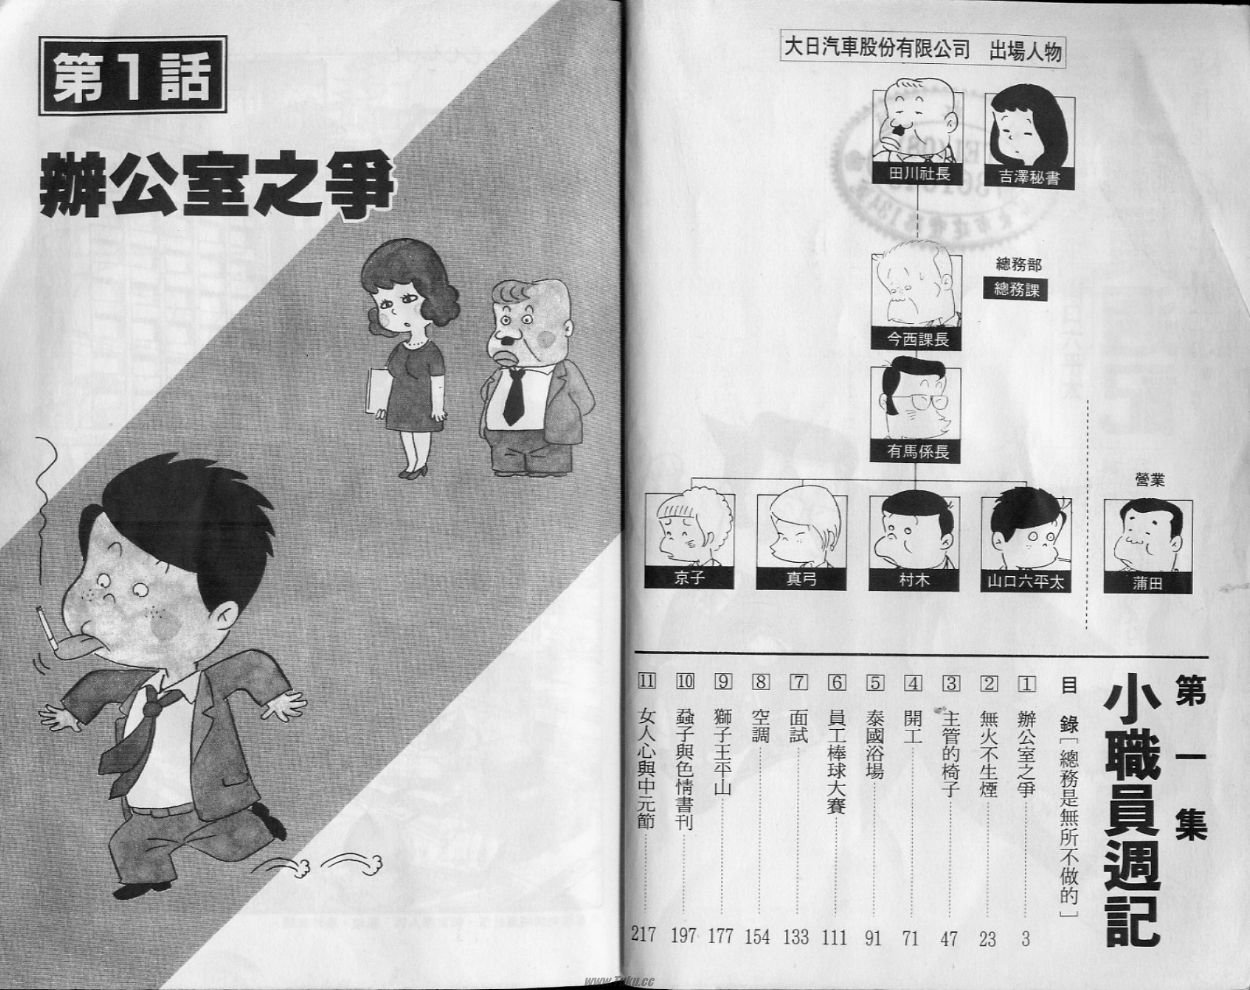 小職員周記 第1卷 漫畫線上看 動漫戲說 Acgn Cc